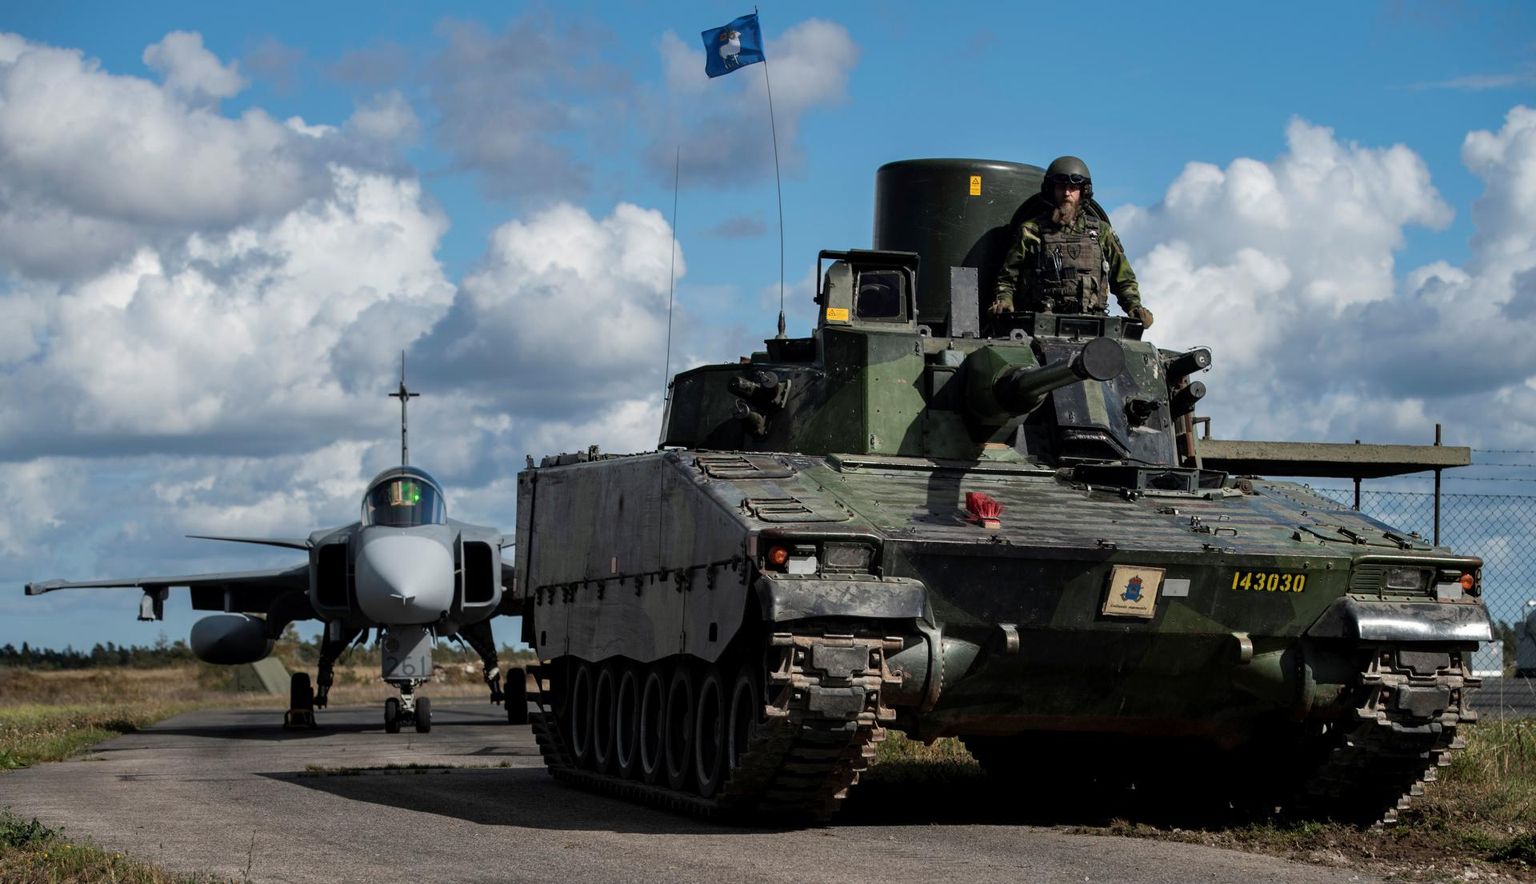 Rootsi kaitseväe peastaabis tsiviilametnikuna töötanud petturi ülesanne oli analüüsida Rootsi armee tugevusi ja nõrkusi. 